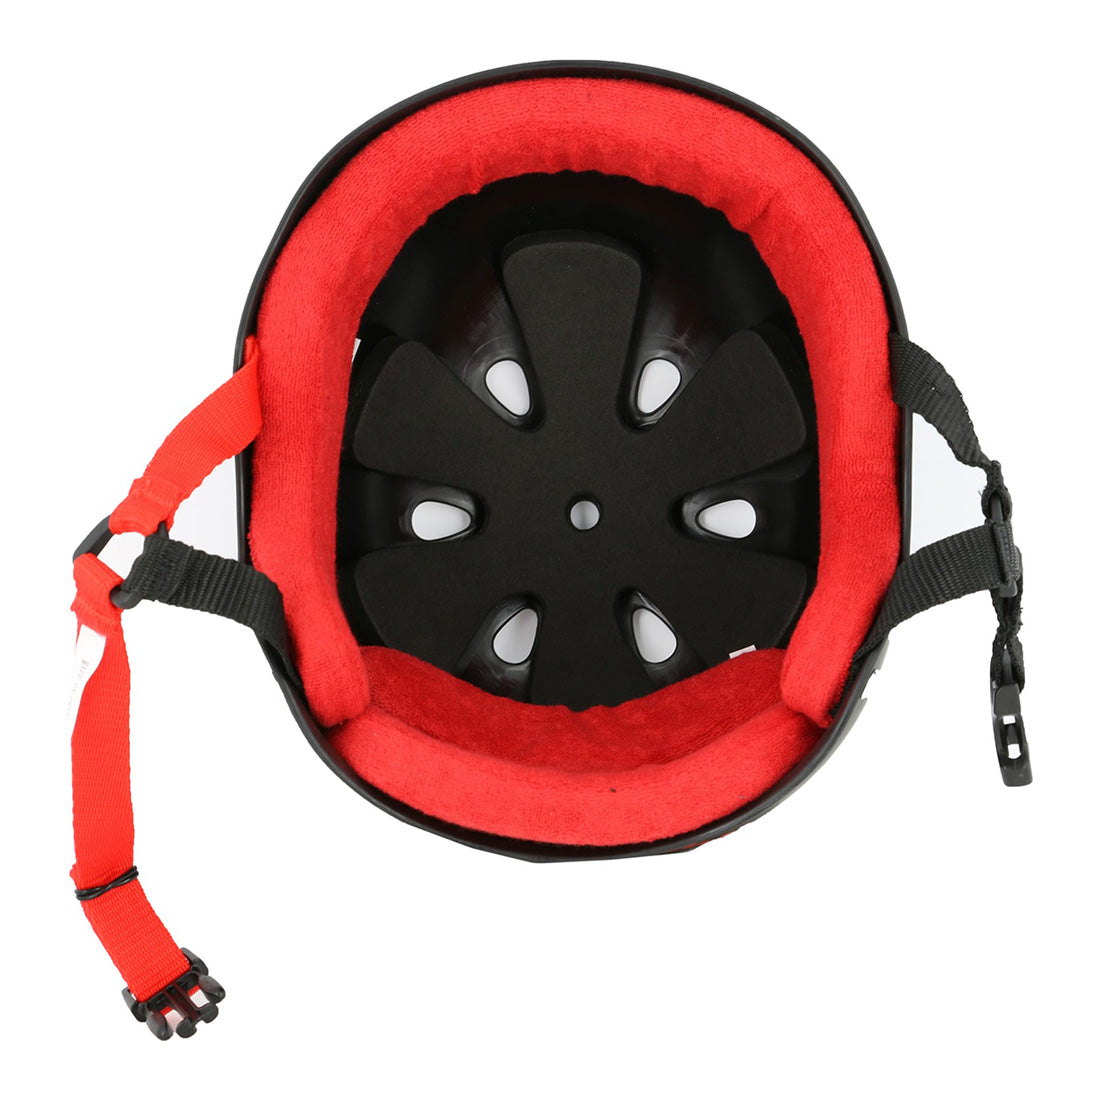 Triple 8 Skate SS Helmet - Black/Red Rubber Helmets